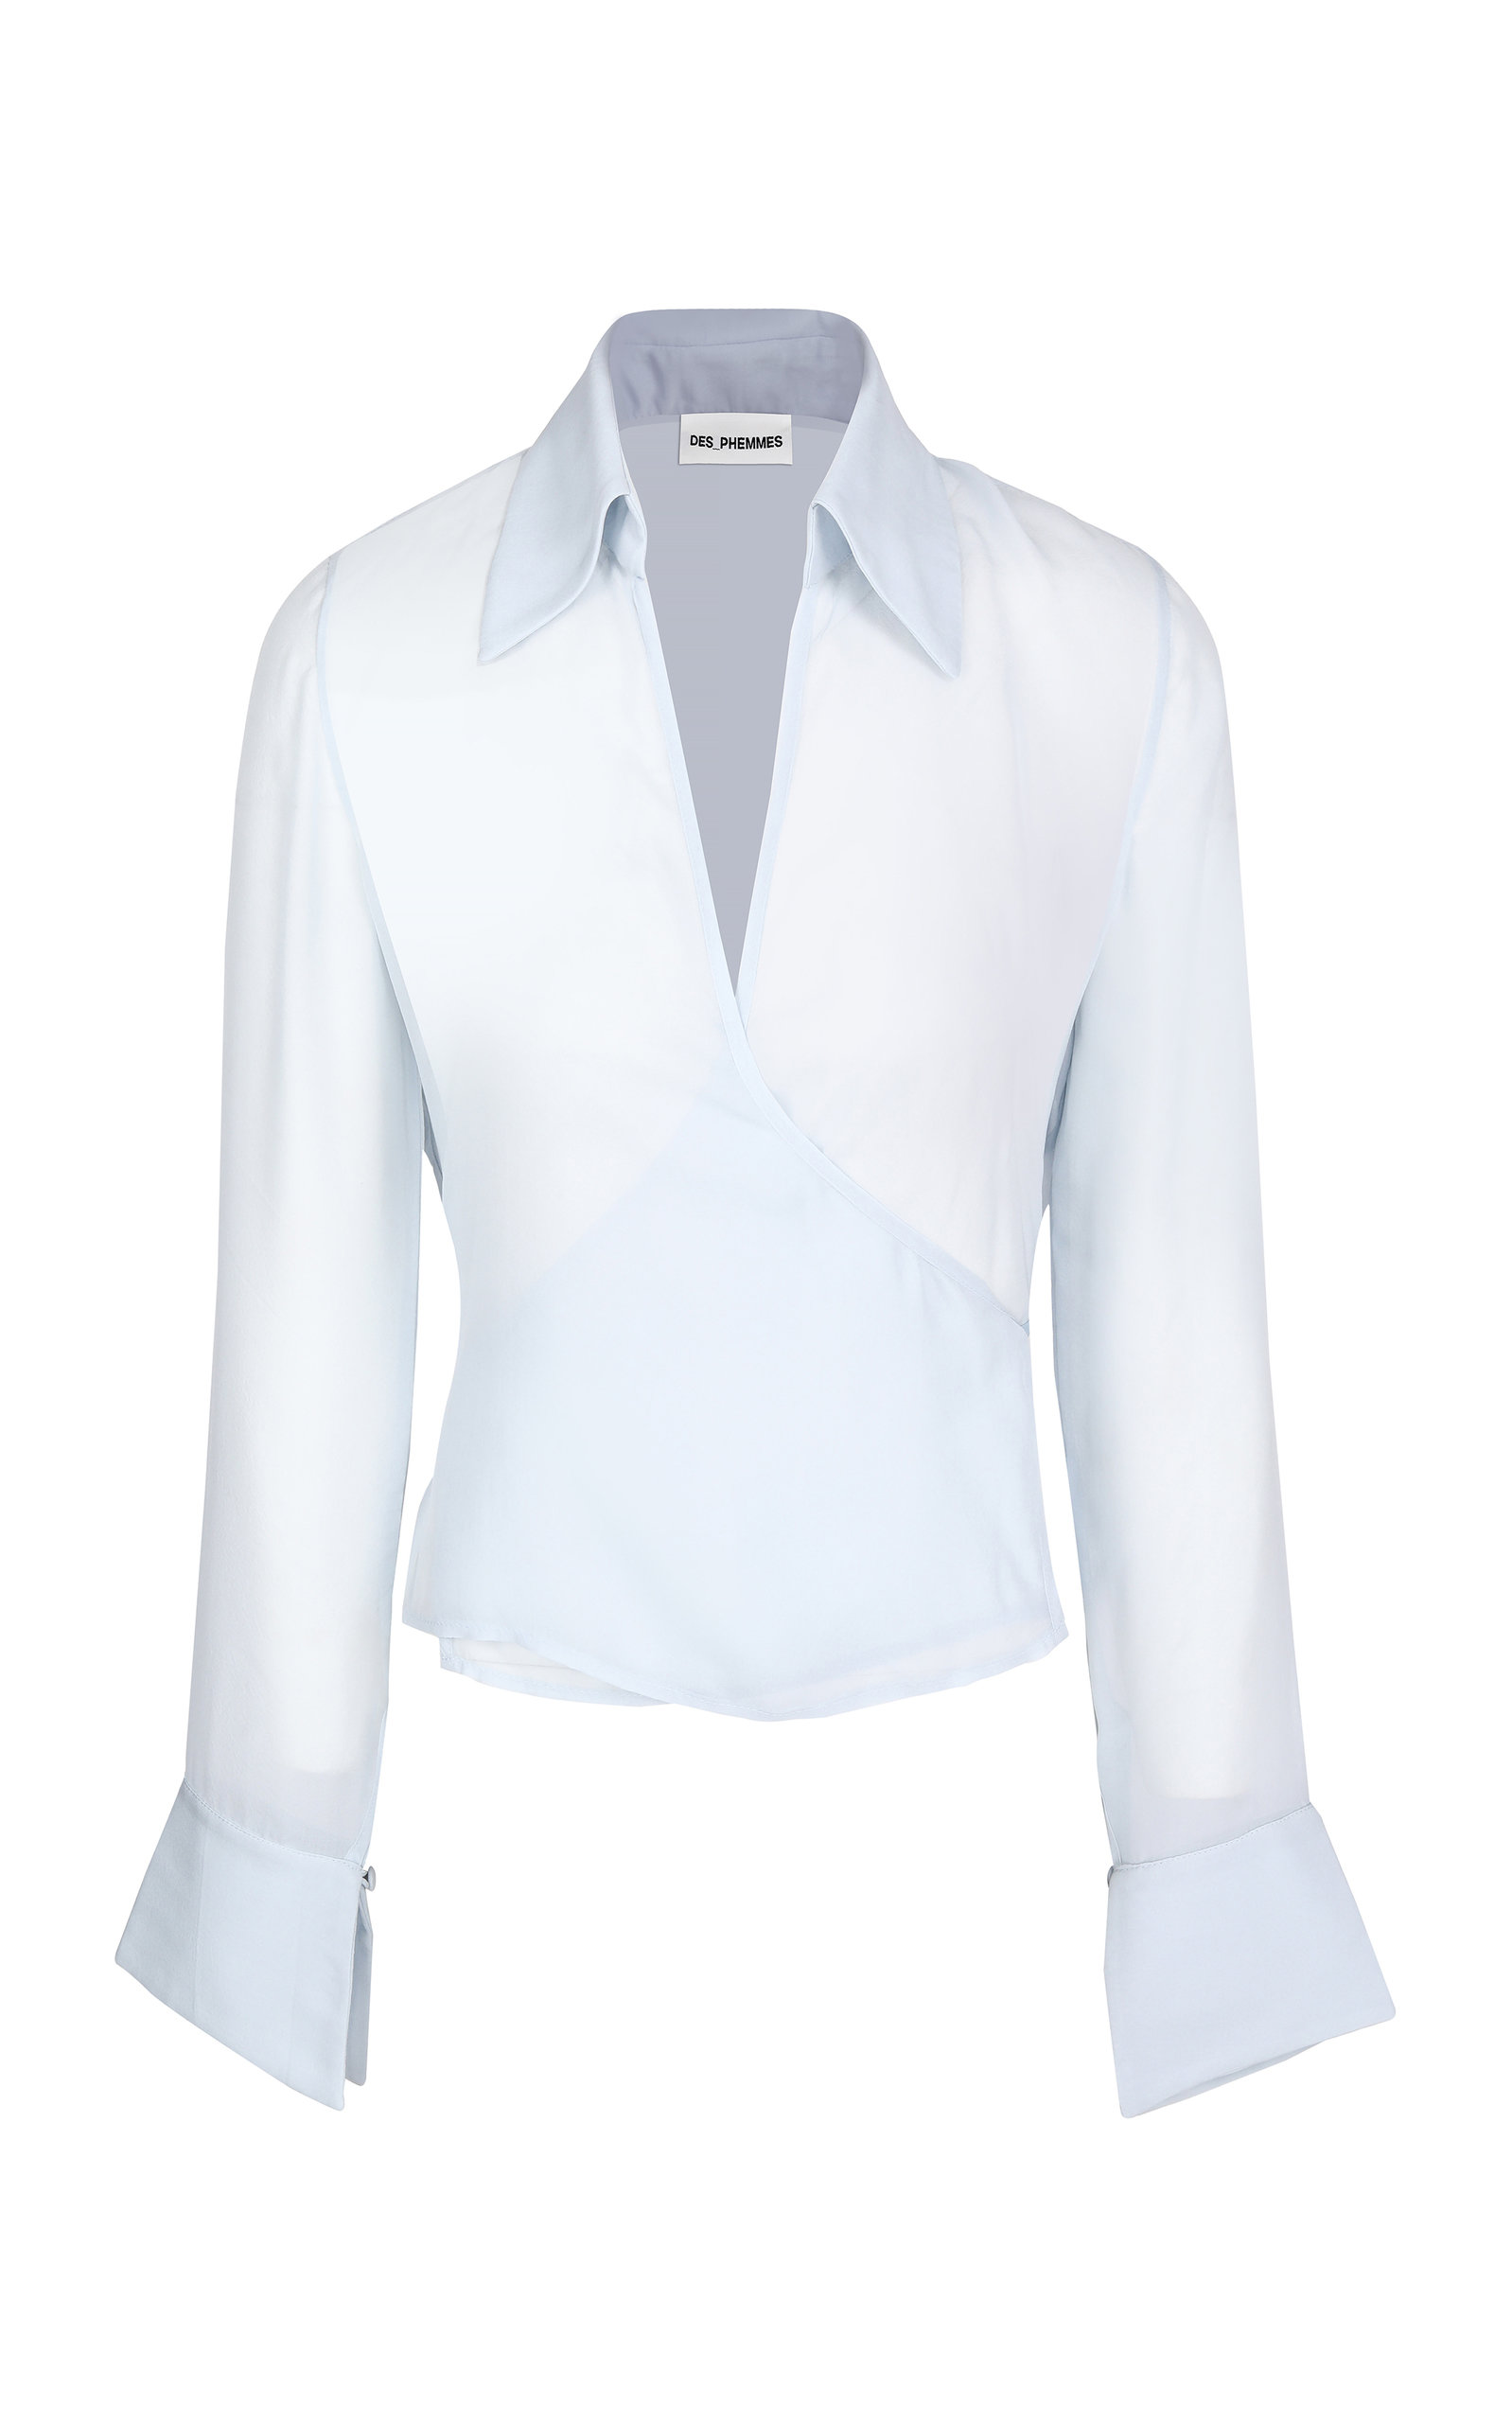 DES_PHEMMES Women's Silk Chiffon Shirt | Smart Closet